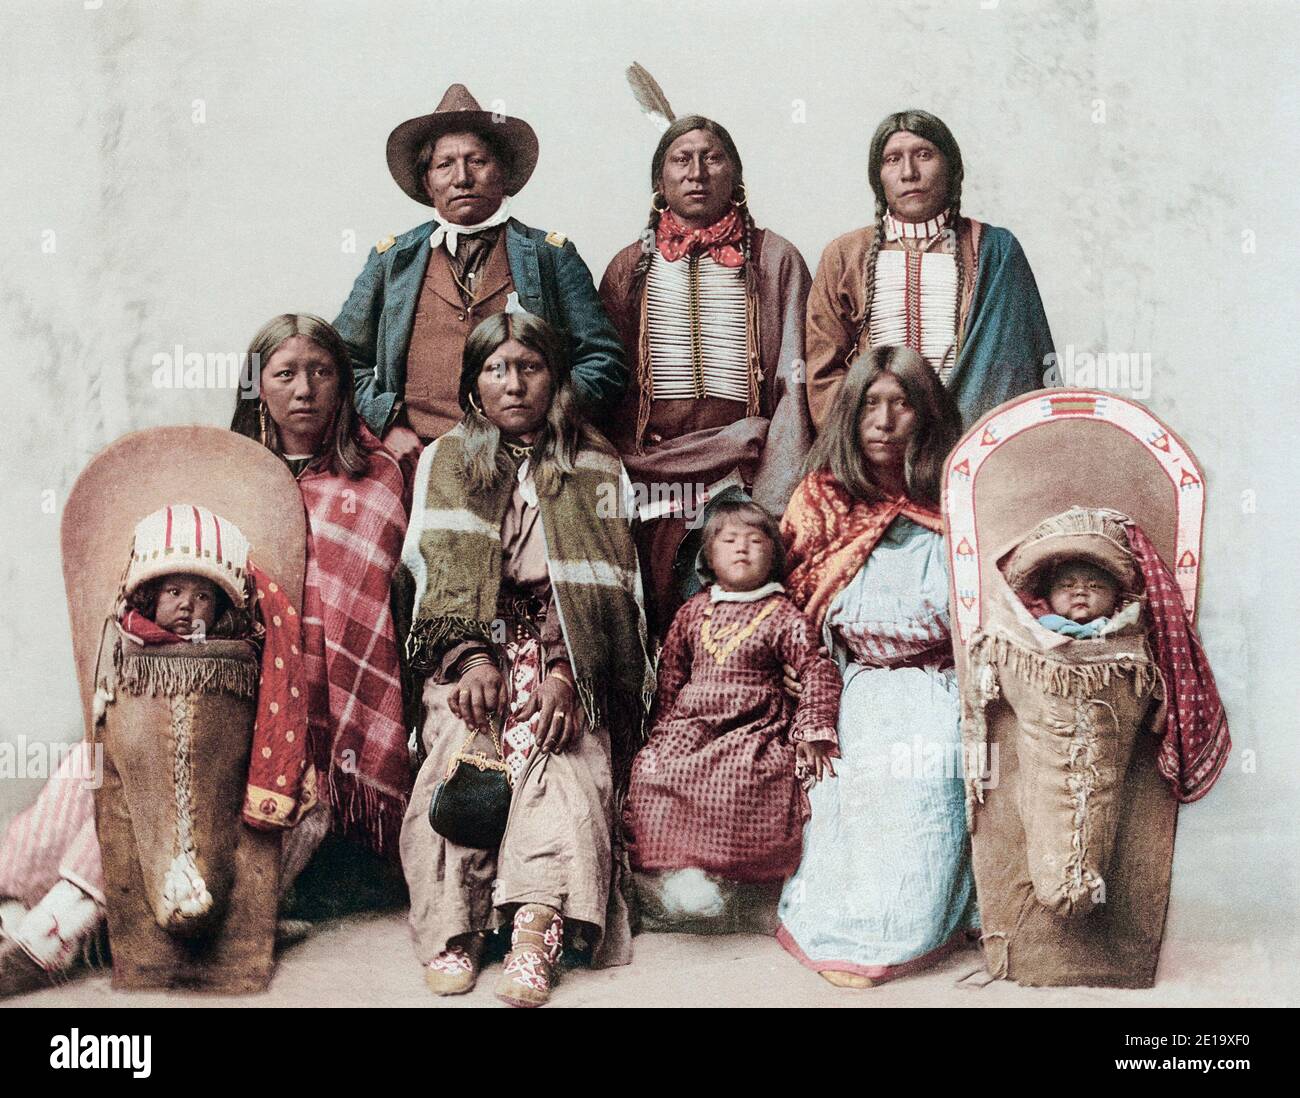 Ute Chief Sevara und seine Familie. Der Staat Utah ist nach den Ute-Menschen benannt. Nach einem Foto-Chromolithographen von Fotograf Charles Nast, veröffentlicht um 1899 von der Detroit Photographic Co.. Stockfoto